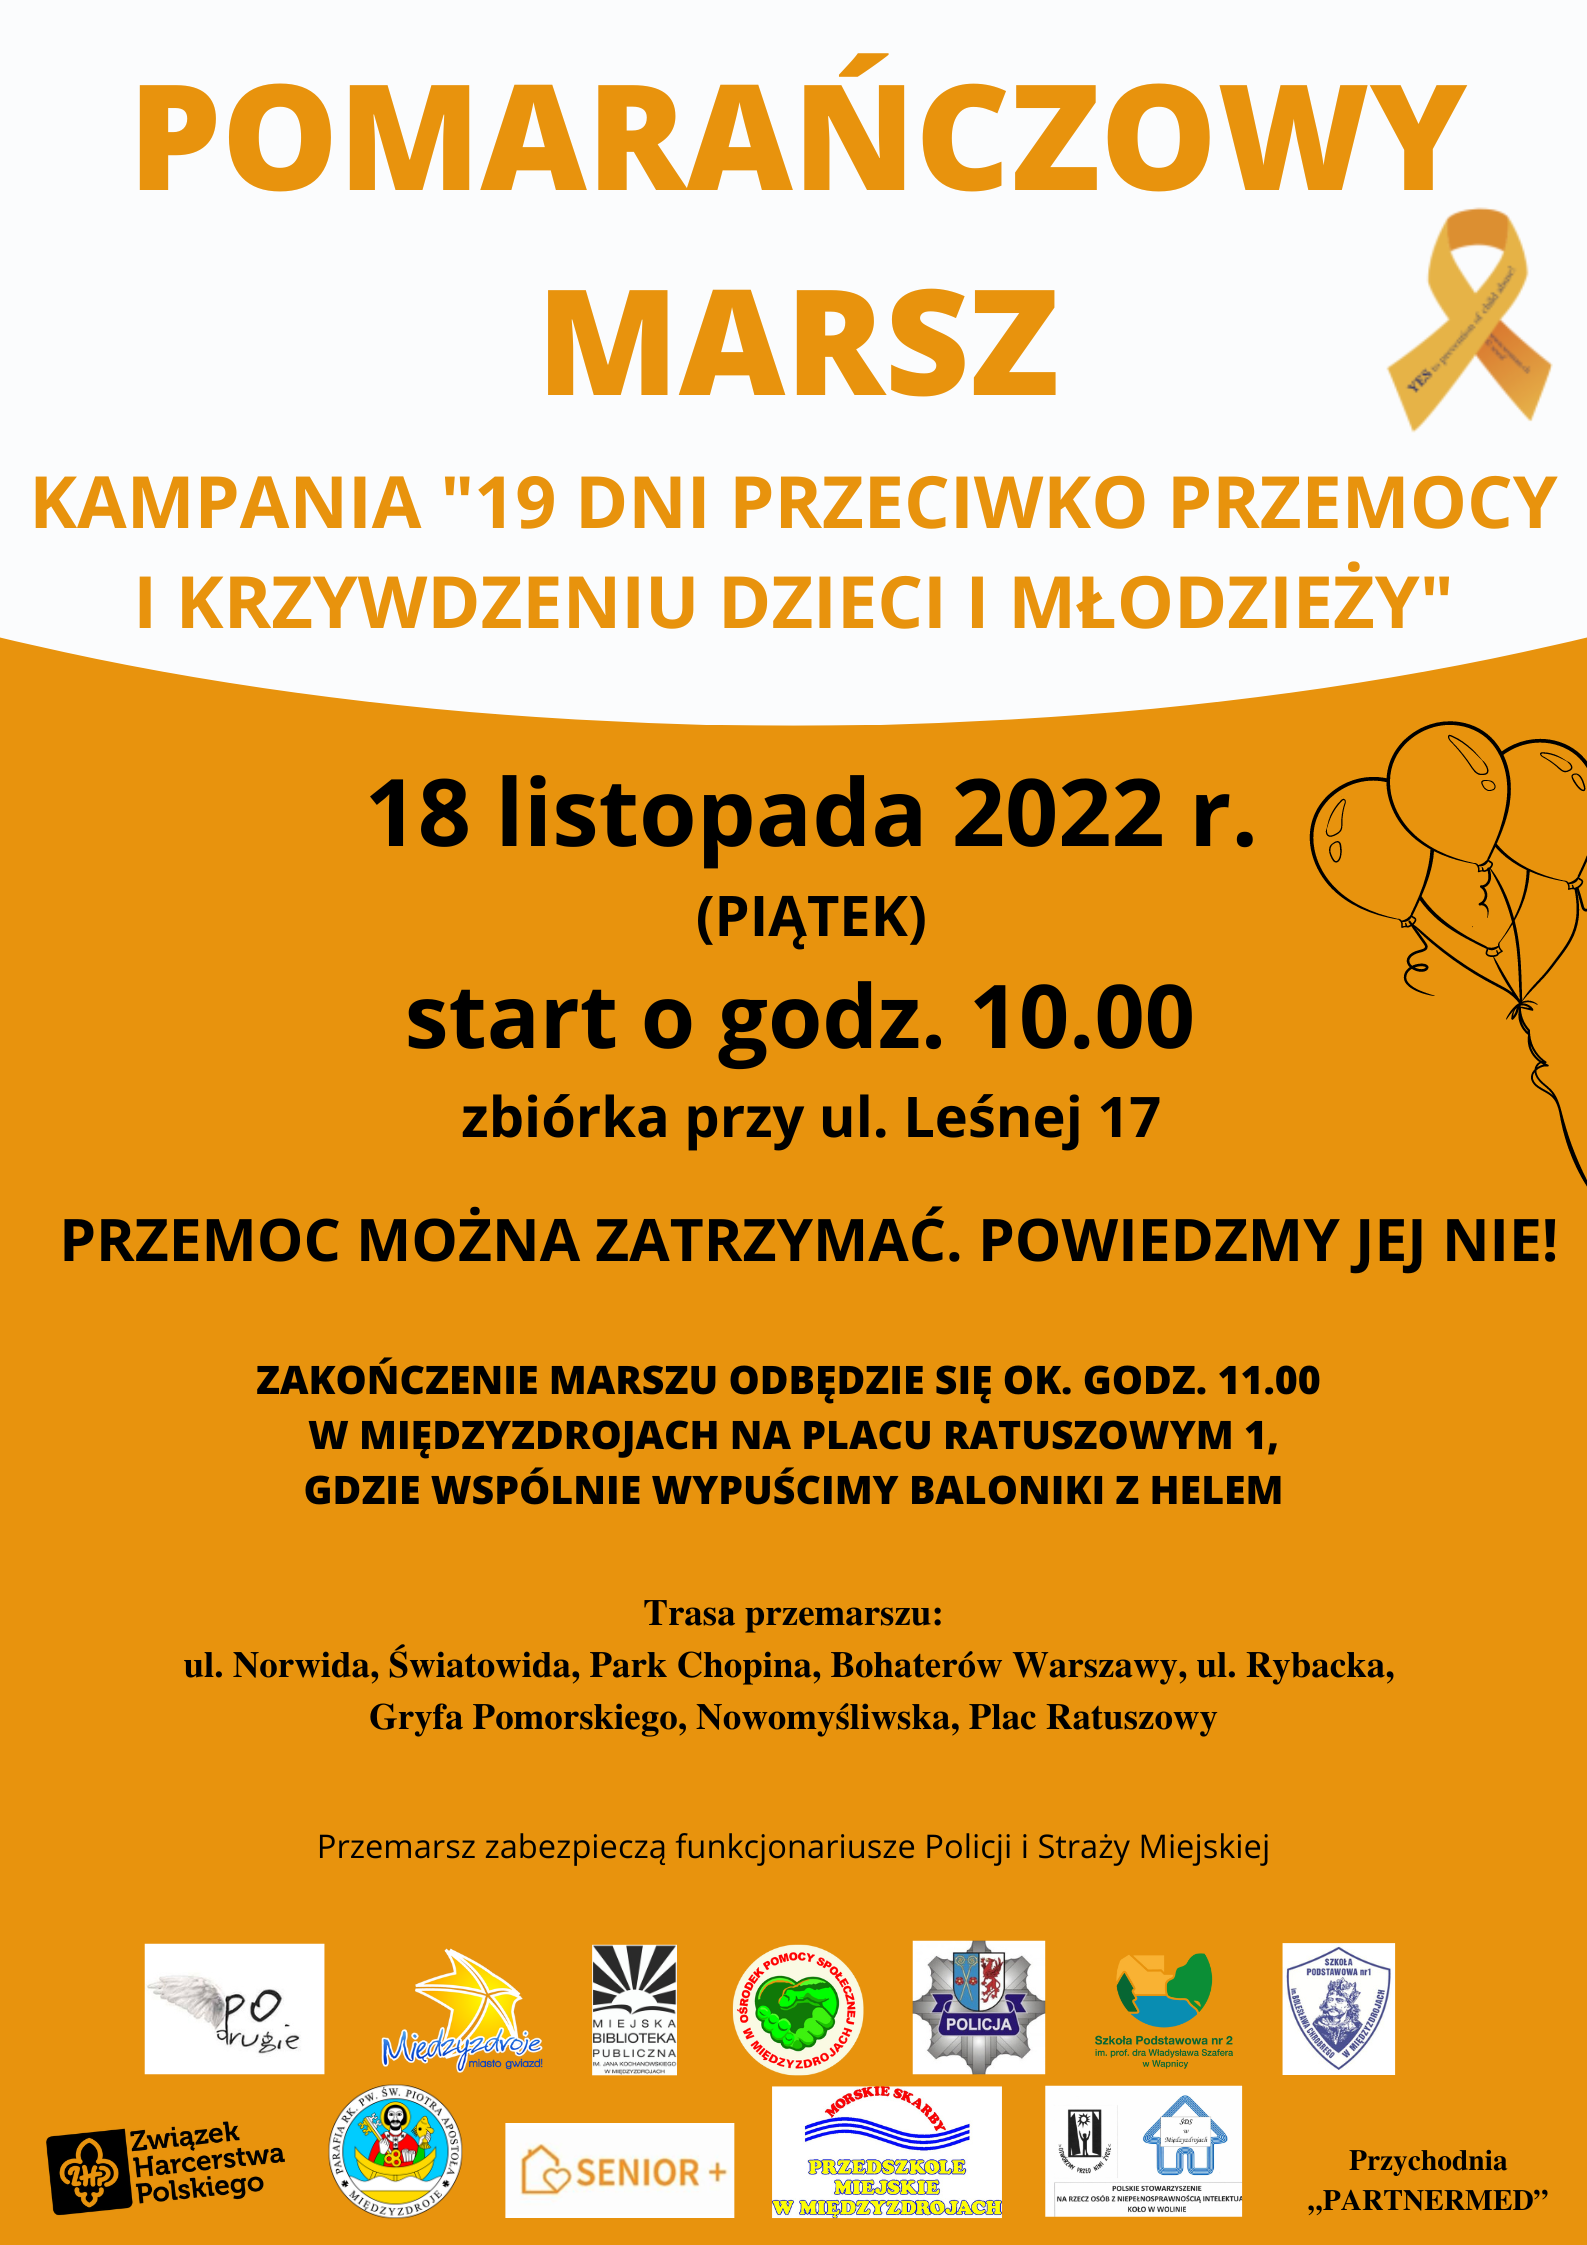 Pomarańczowy marsz 18 listopada 2022 r. - zapowiedź